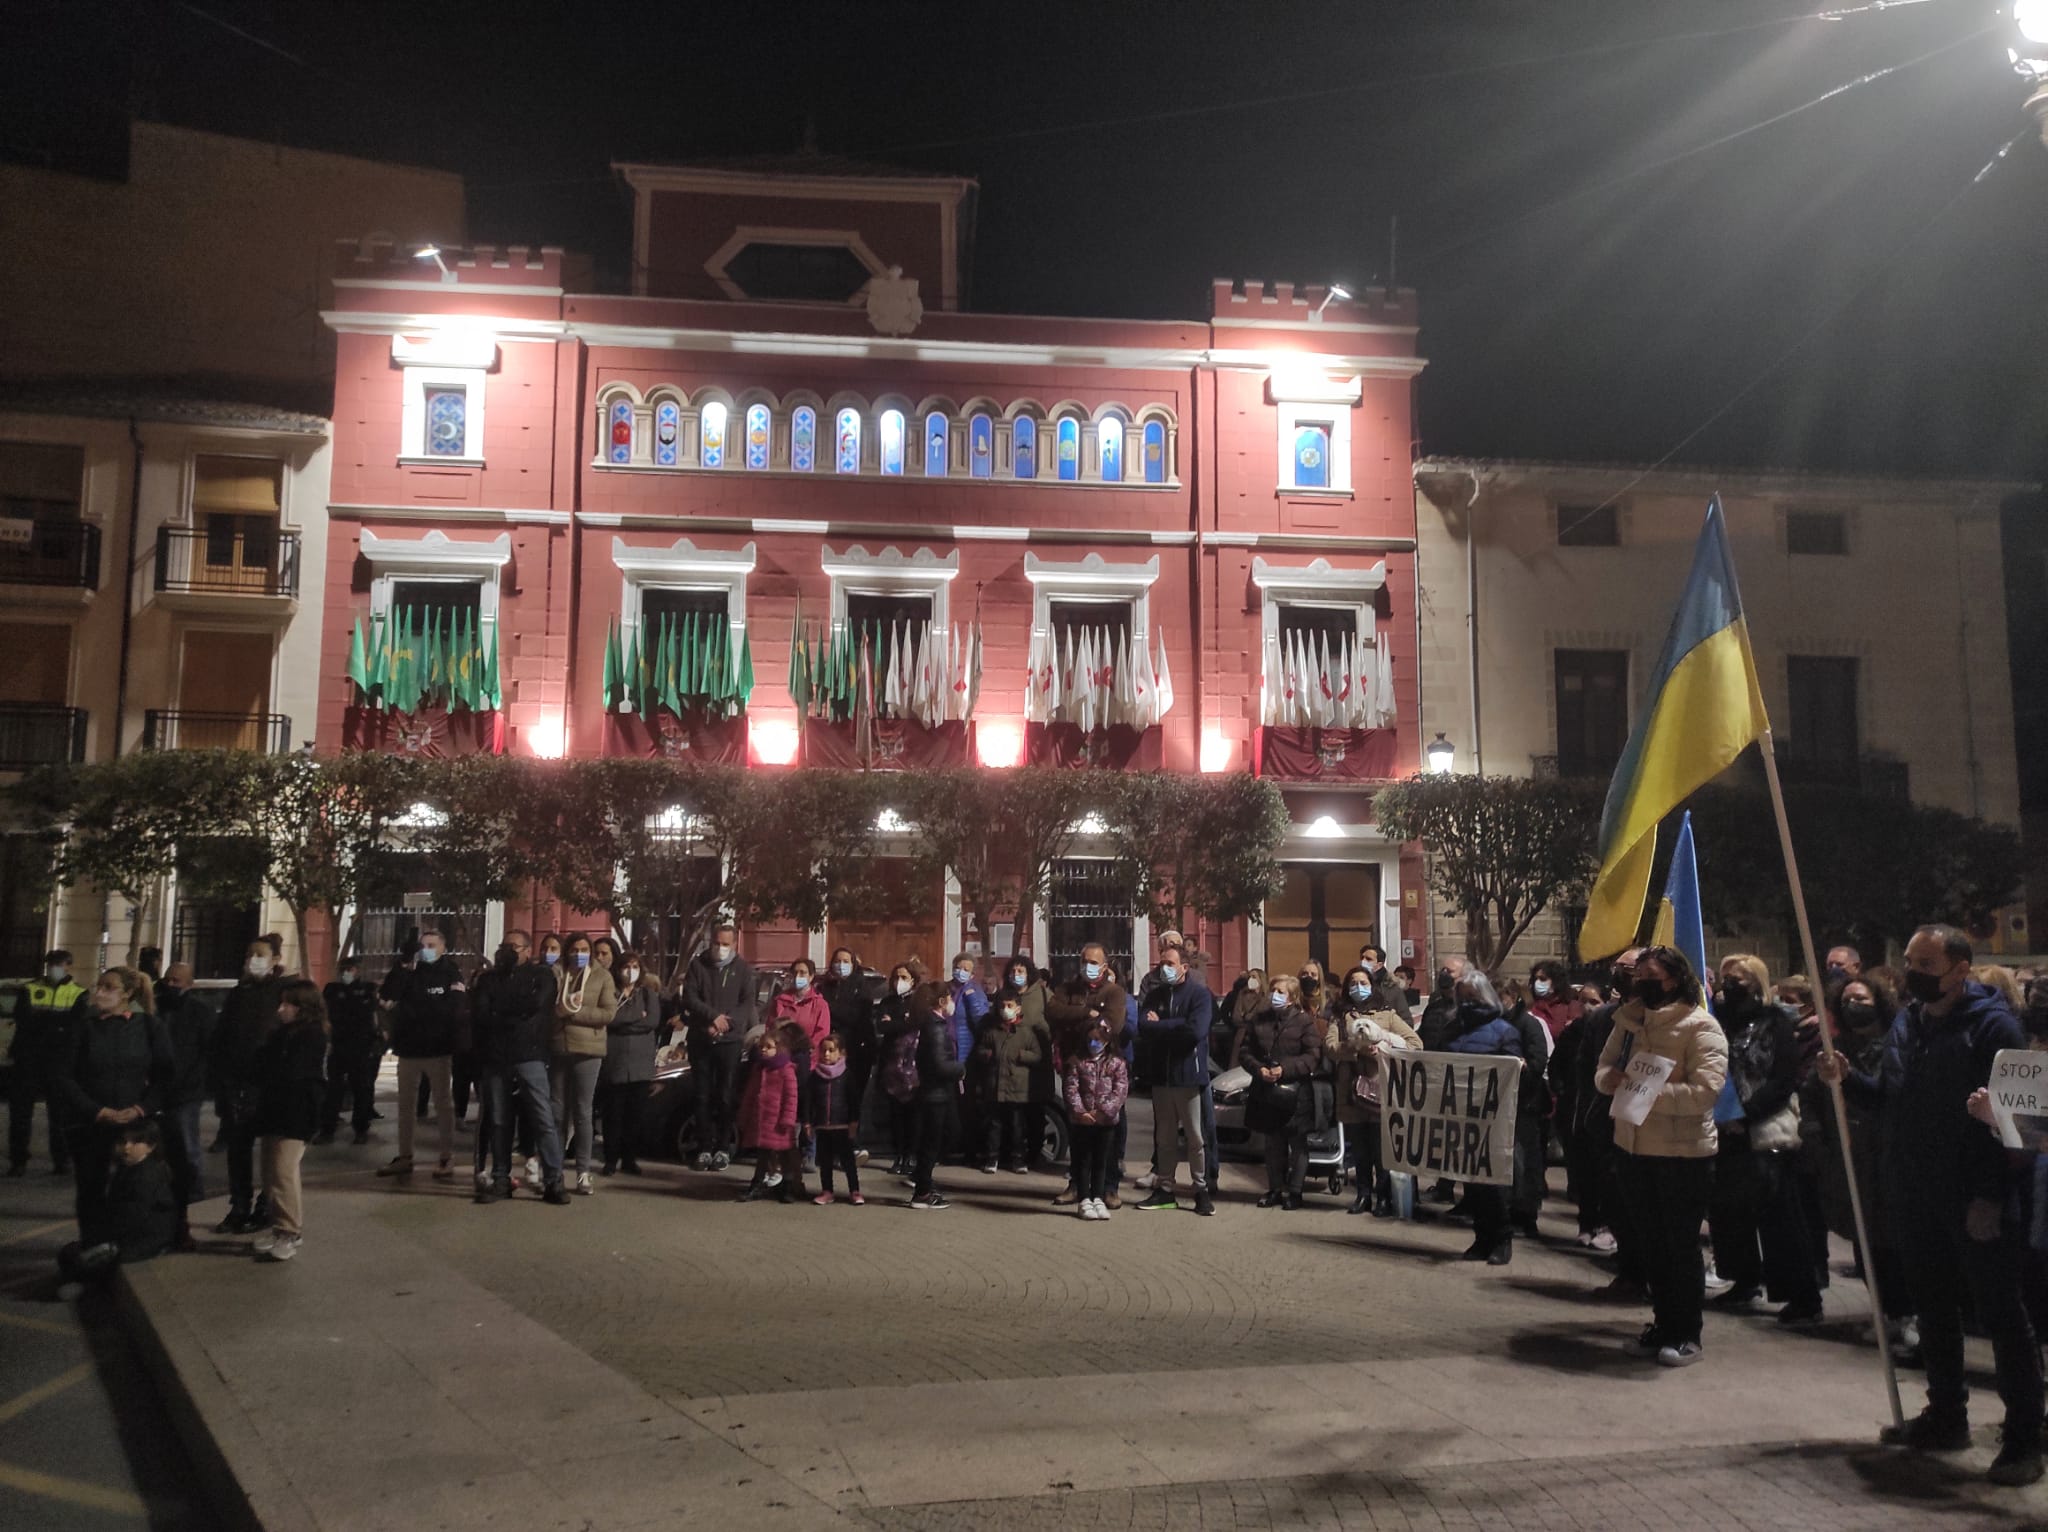 Rechazo ciudadano a la Guerra y apoyo absoluto de Villena al pueblo de Ucrania